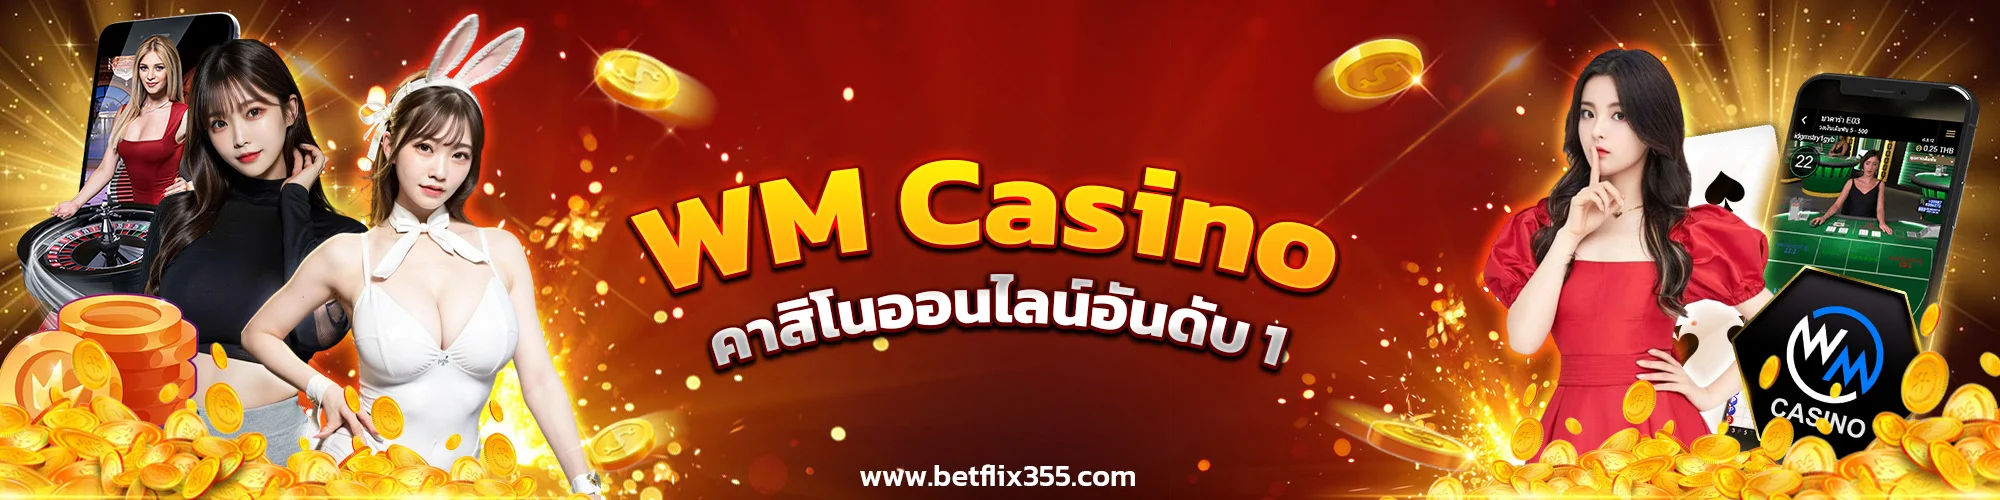 WM Casino คาสิโนออนไลน์อันดับ 1